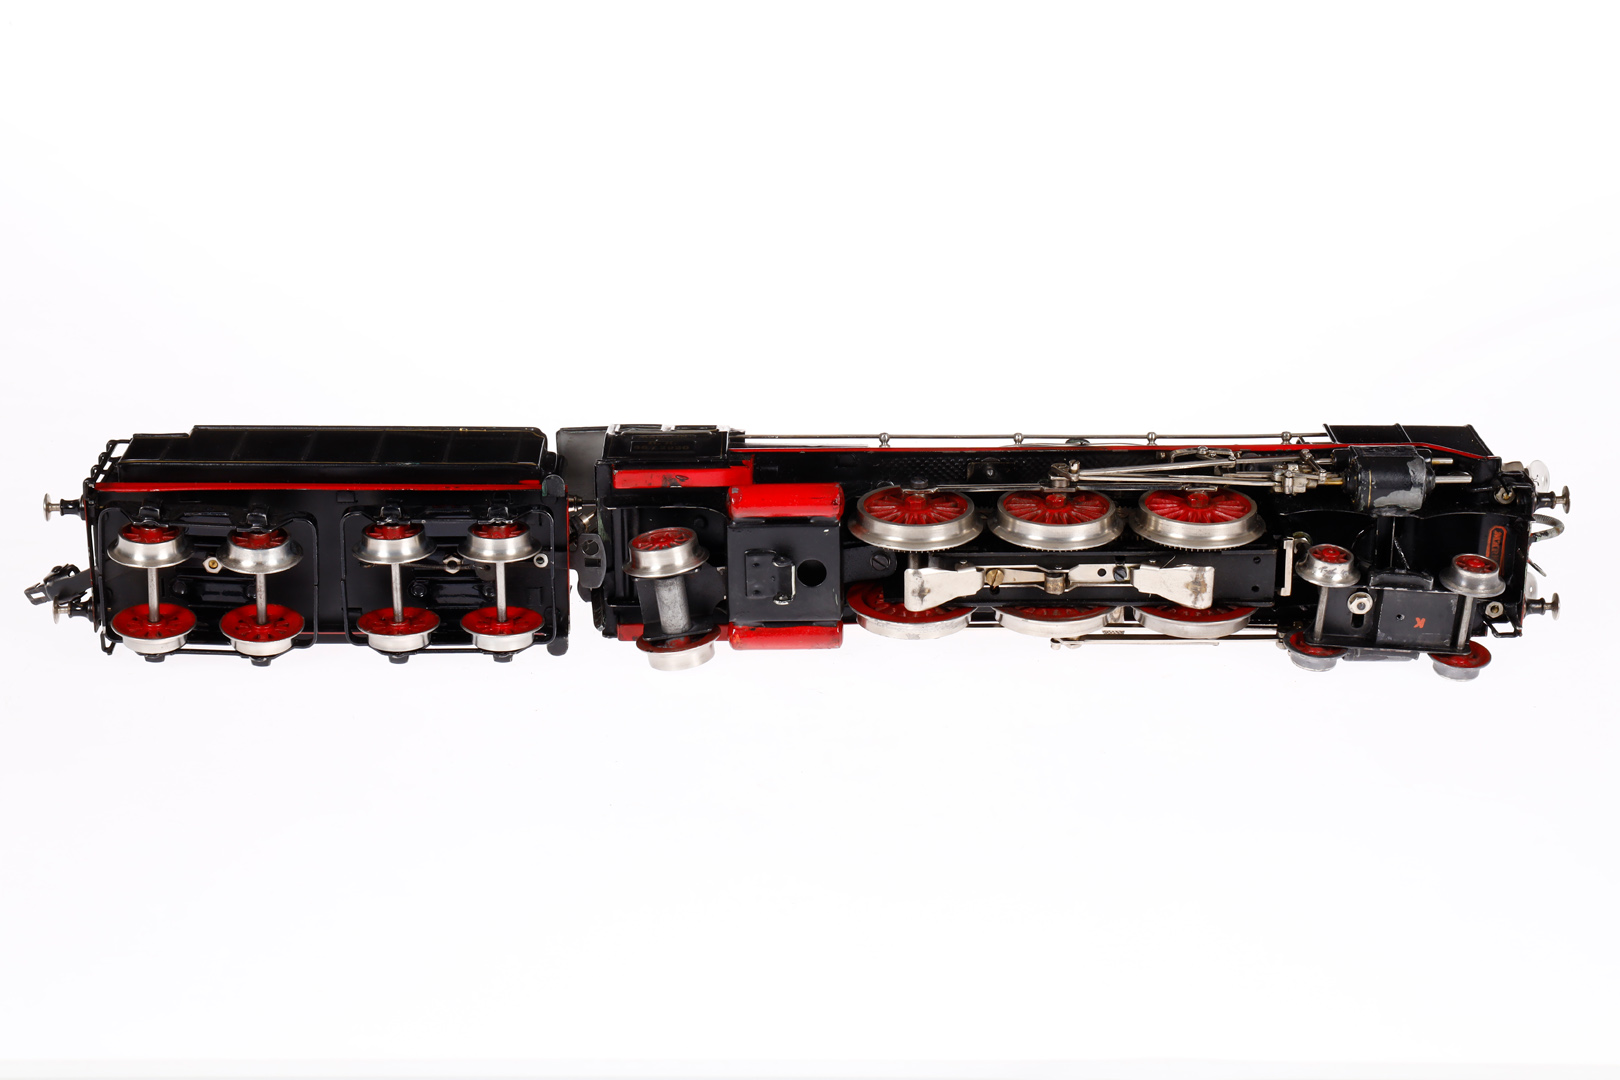 Märklin 2-C-1 Dampflok HR 66/2920, Spur 0, Starkstrom-Version, 110 V, mattschwarz, HL, mit Tender, - Bild 5 aus 5